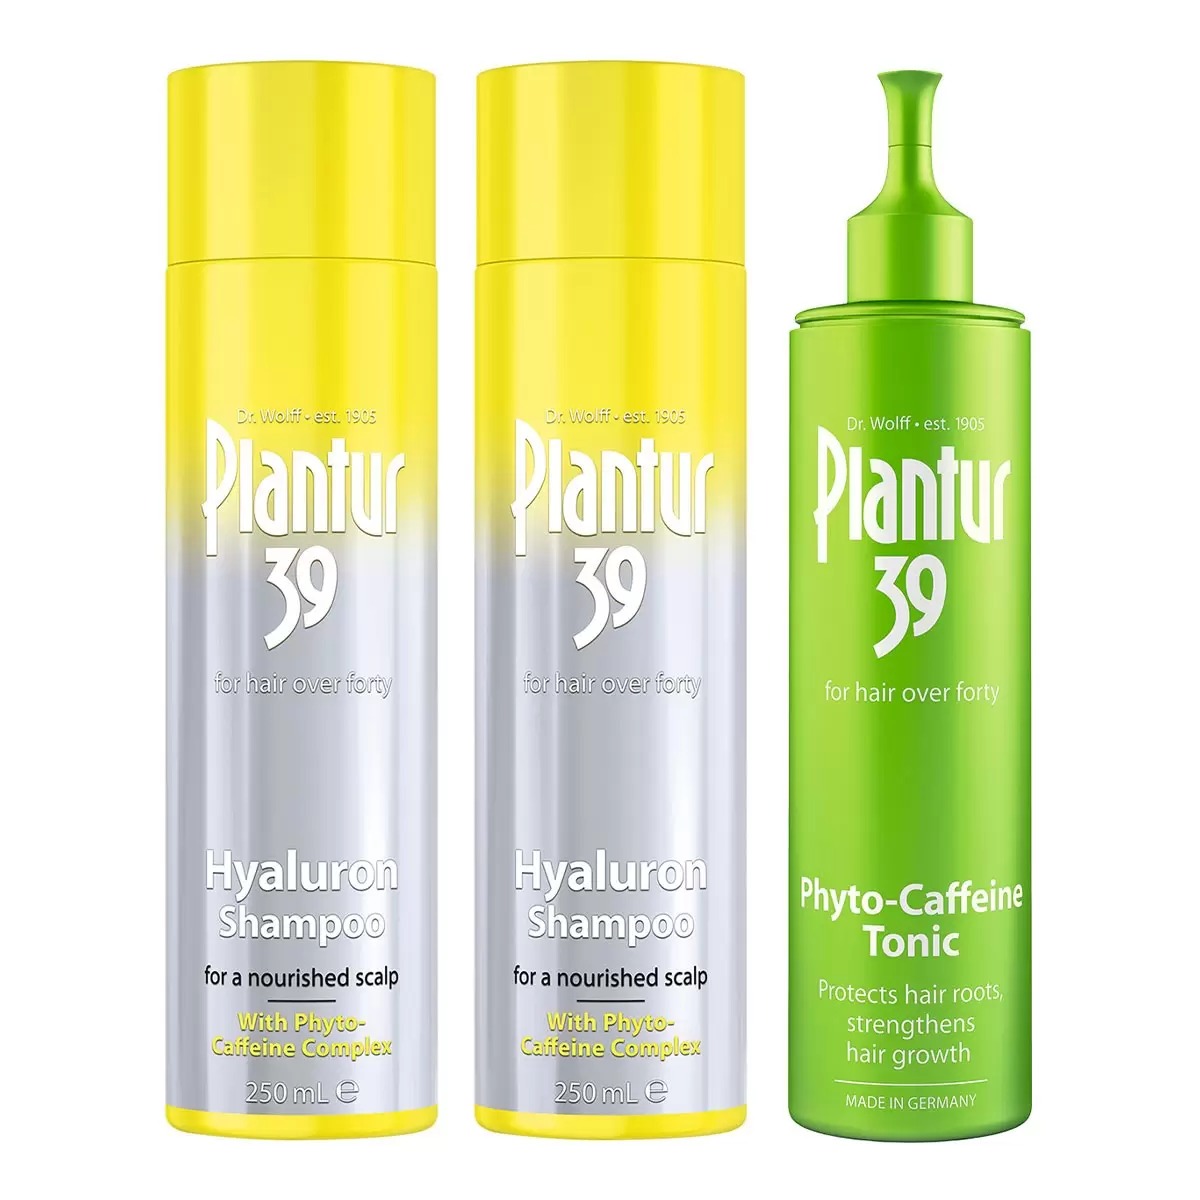 Plantur 39 玻尿酸咖啡因洗髮露 250毫升 X 2入 + 頭髮液組合 200毫升 X 1入